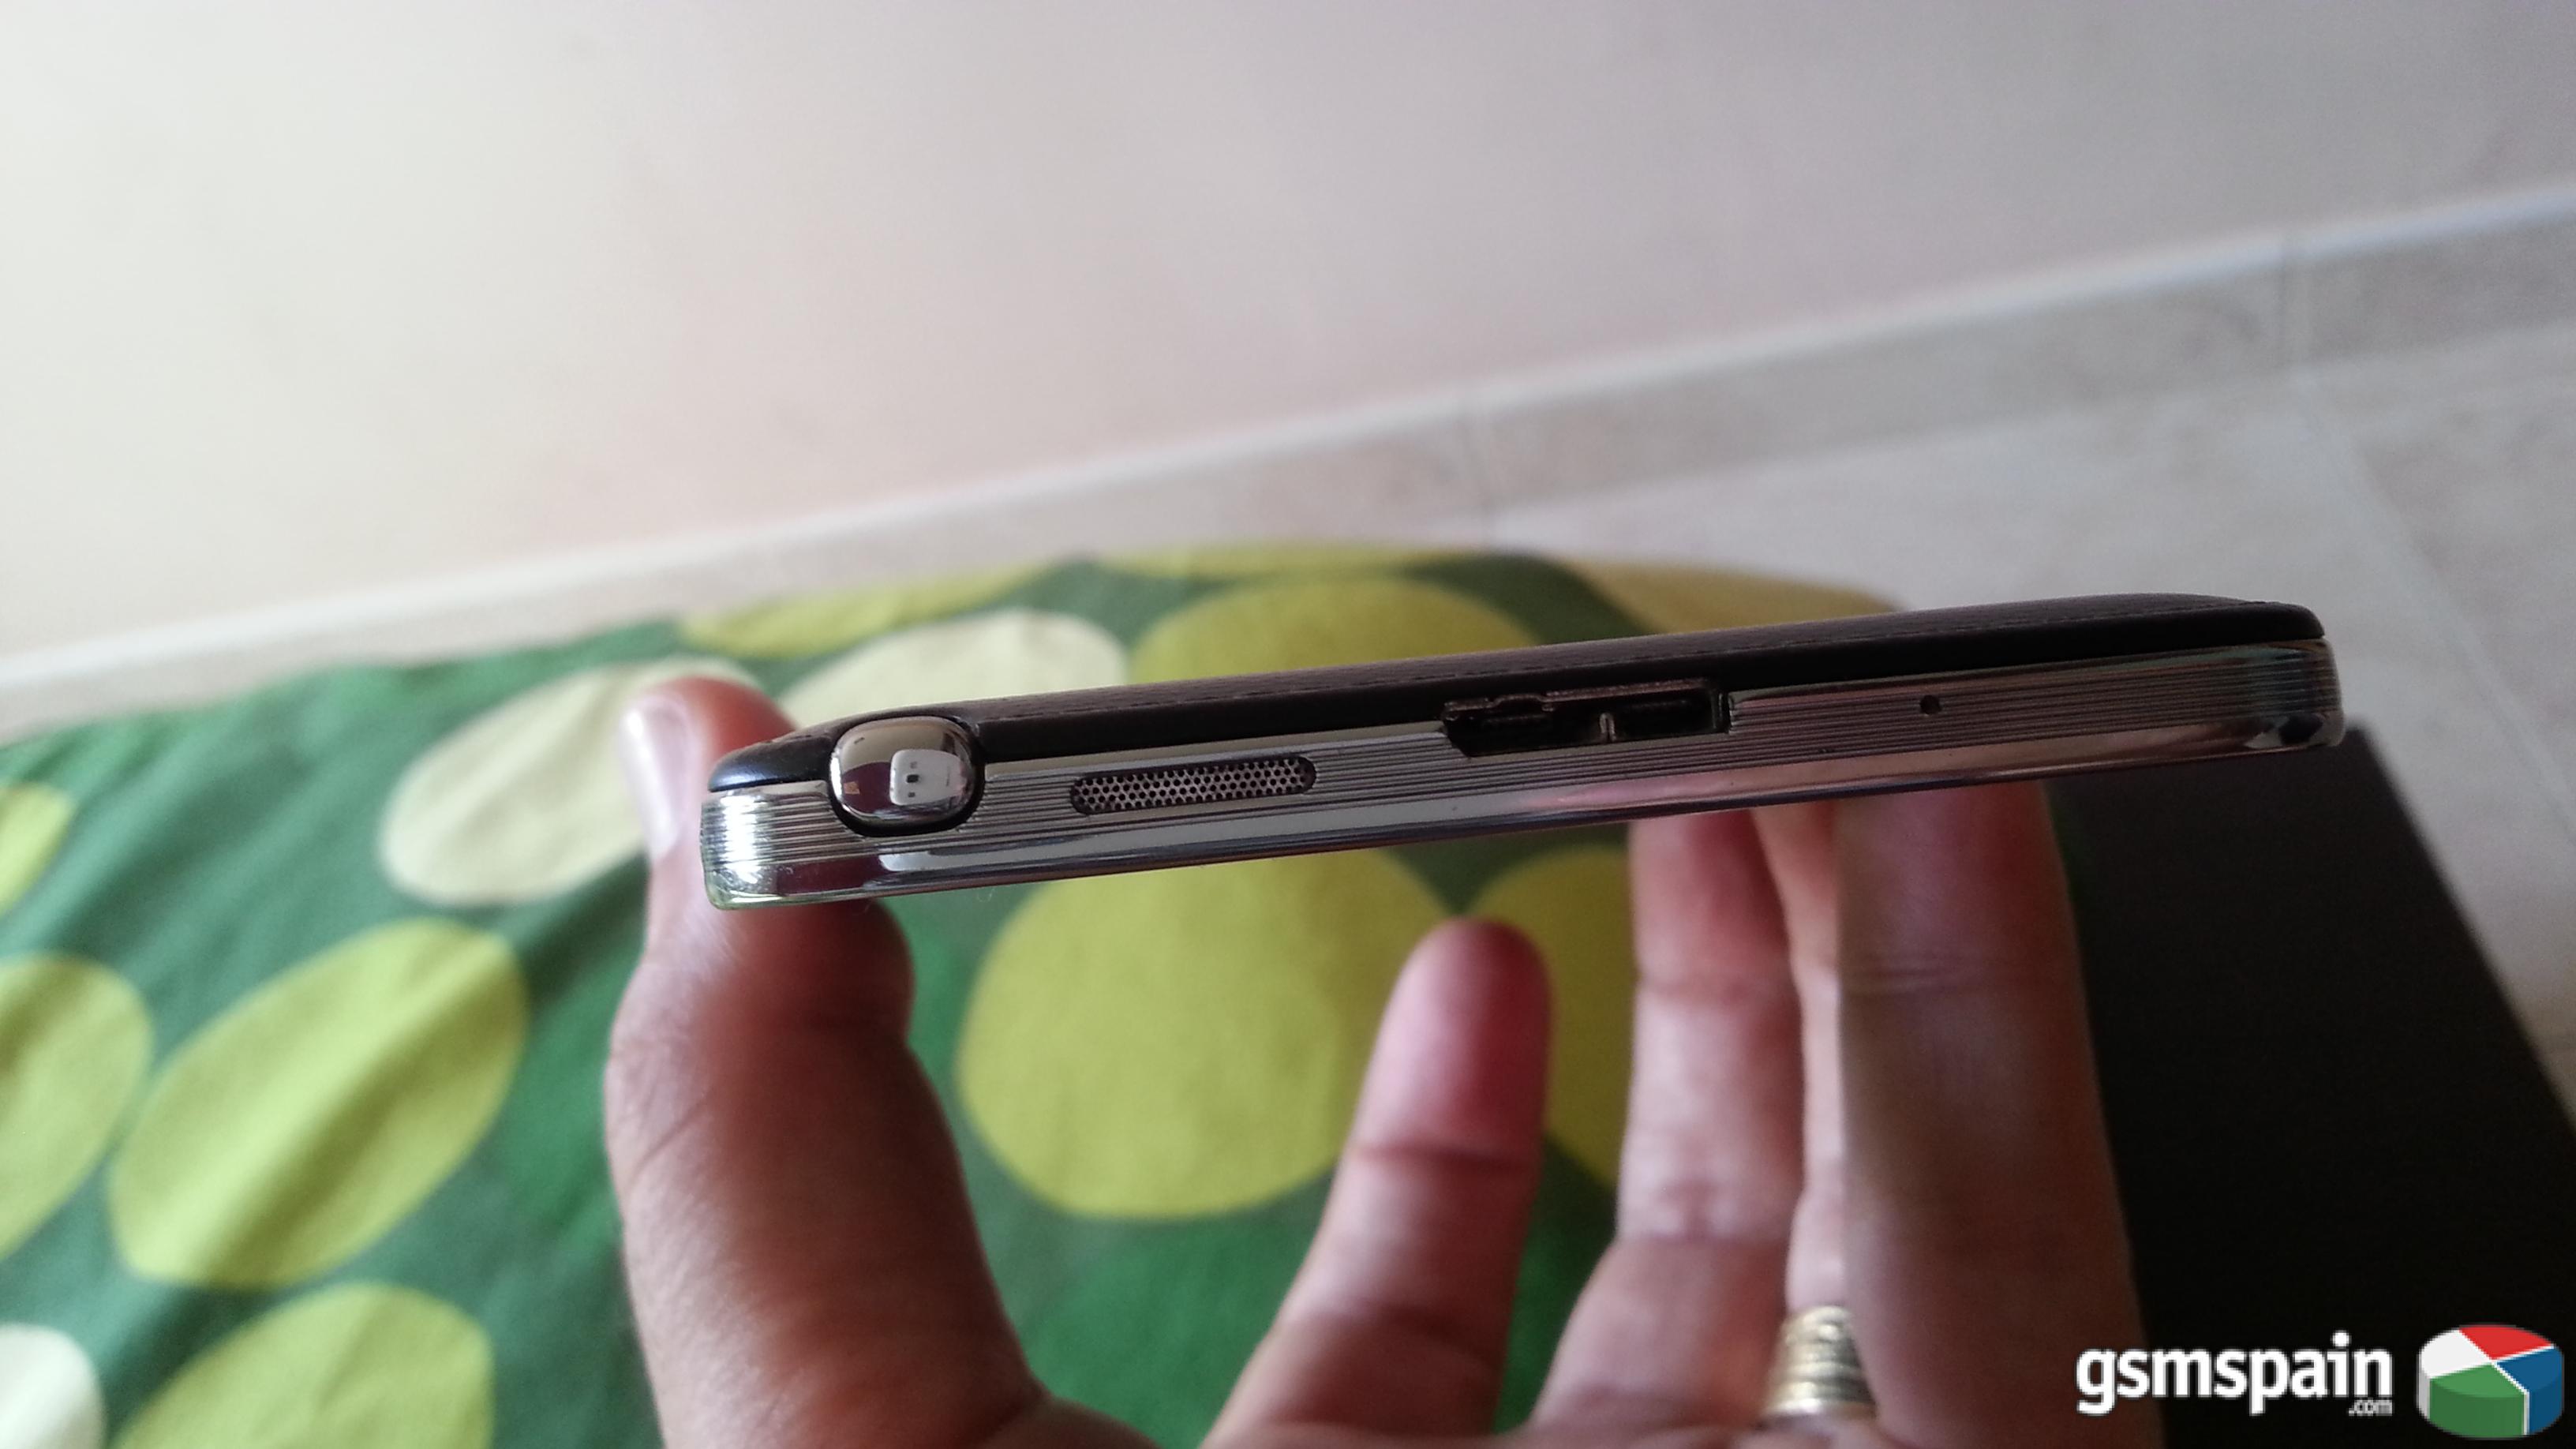 [VENDO] Samsung Galaxy Note 3 libre de fbrica 32gb